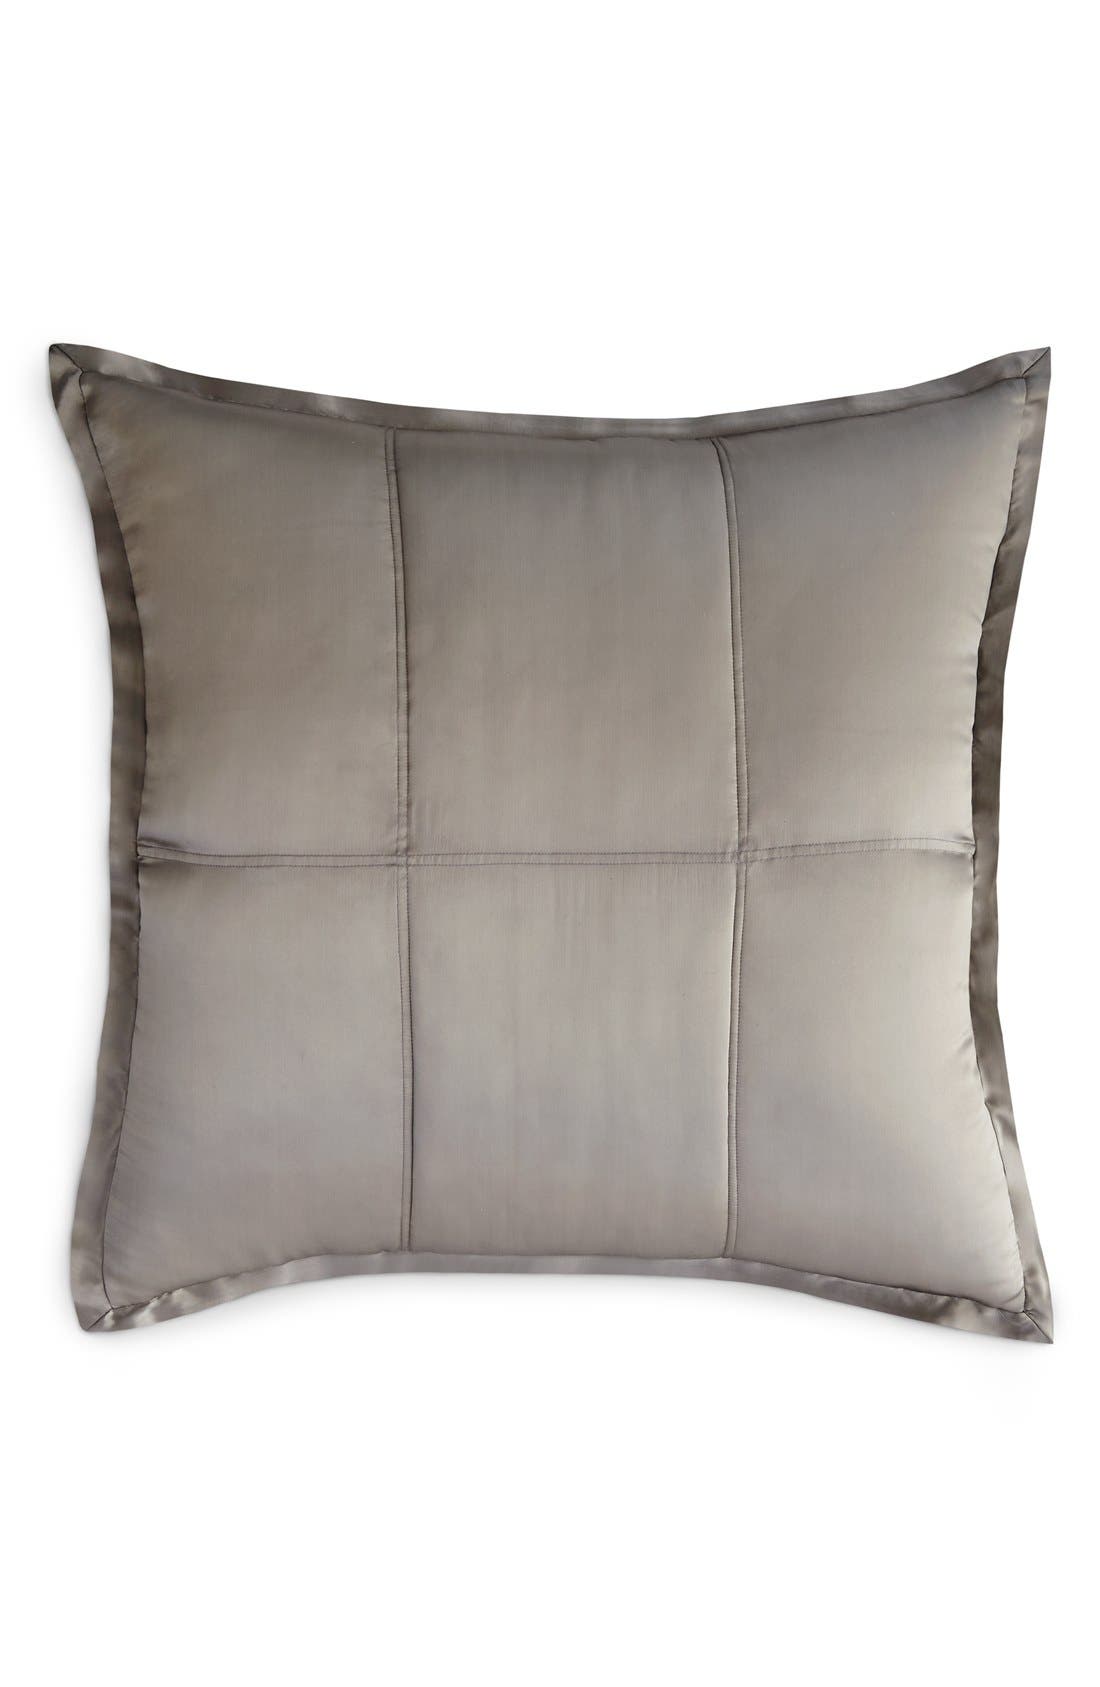 Donna Karan Home Lush Velvet Cotton Blend Standard Pillow Sham Ivory E881 for sale online 